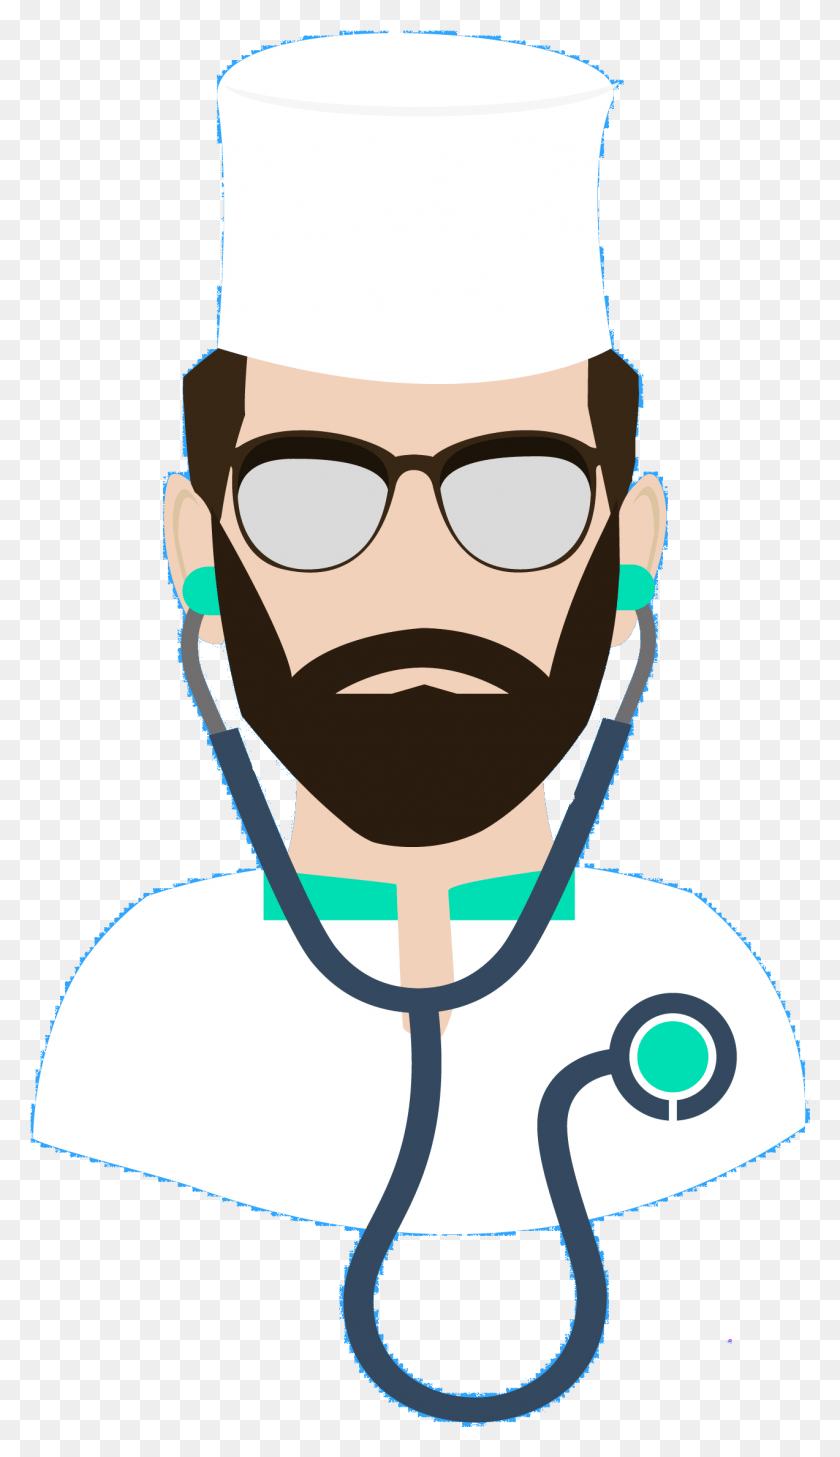 1273x2281 Descargar Png Médico De Dibujos Animados Ilustración Médico Personaje Transprent Médico, Cara, Gafas De Sol, Accesorios Hd Png